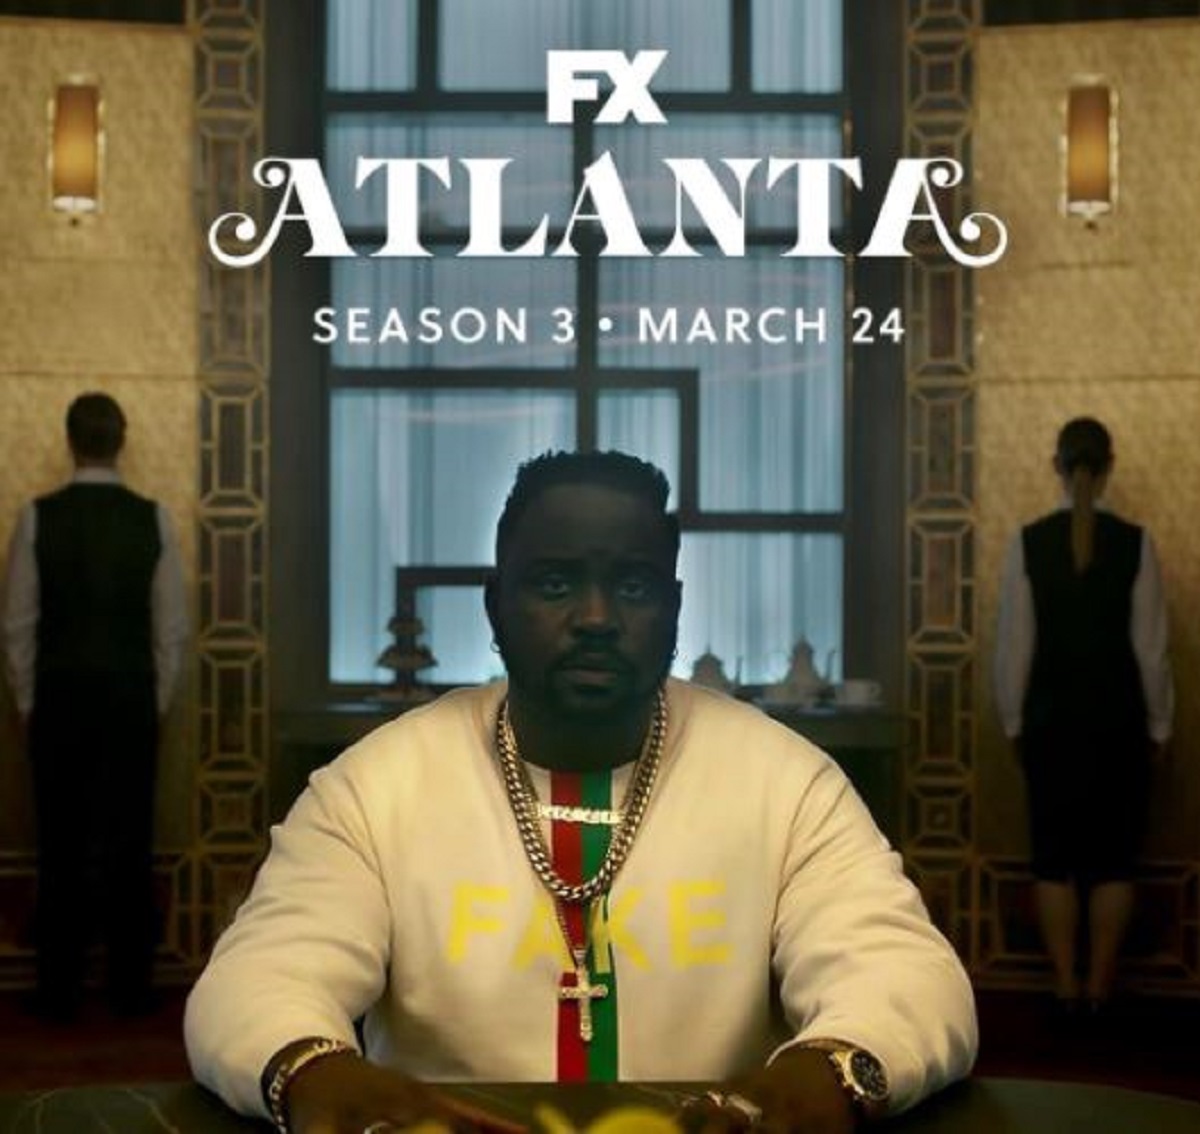 Atlanta FX season 3 premiere